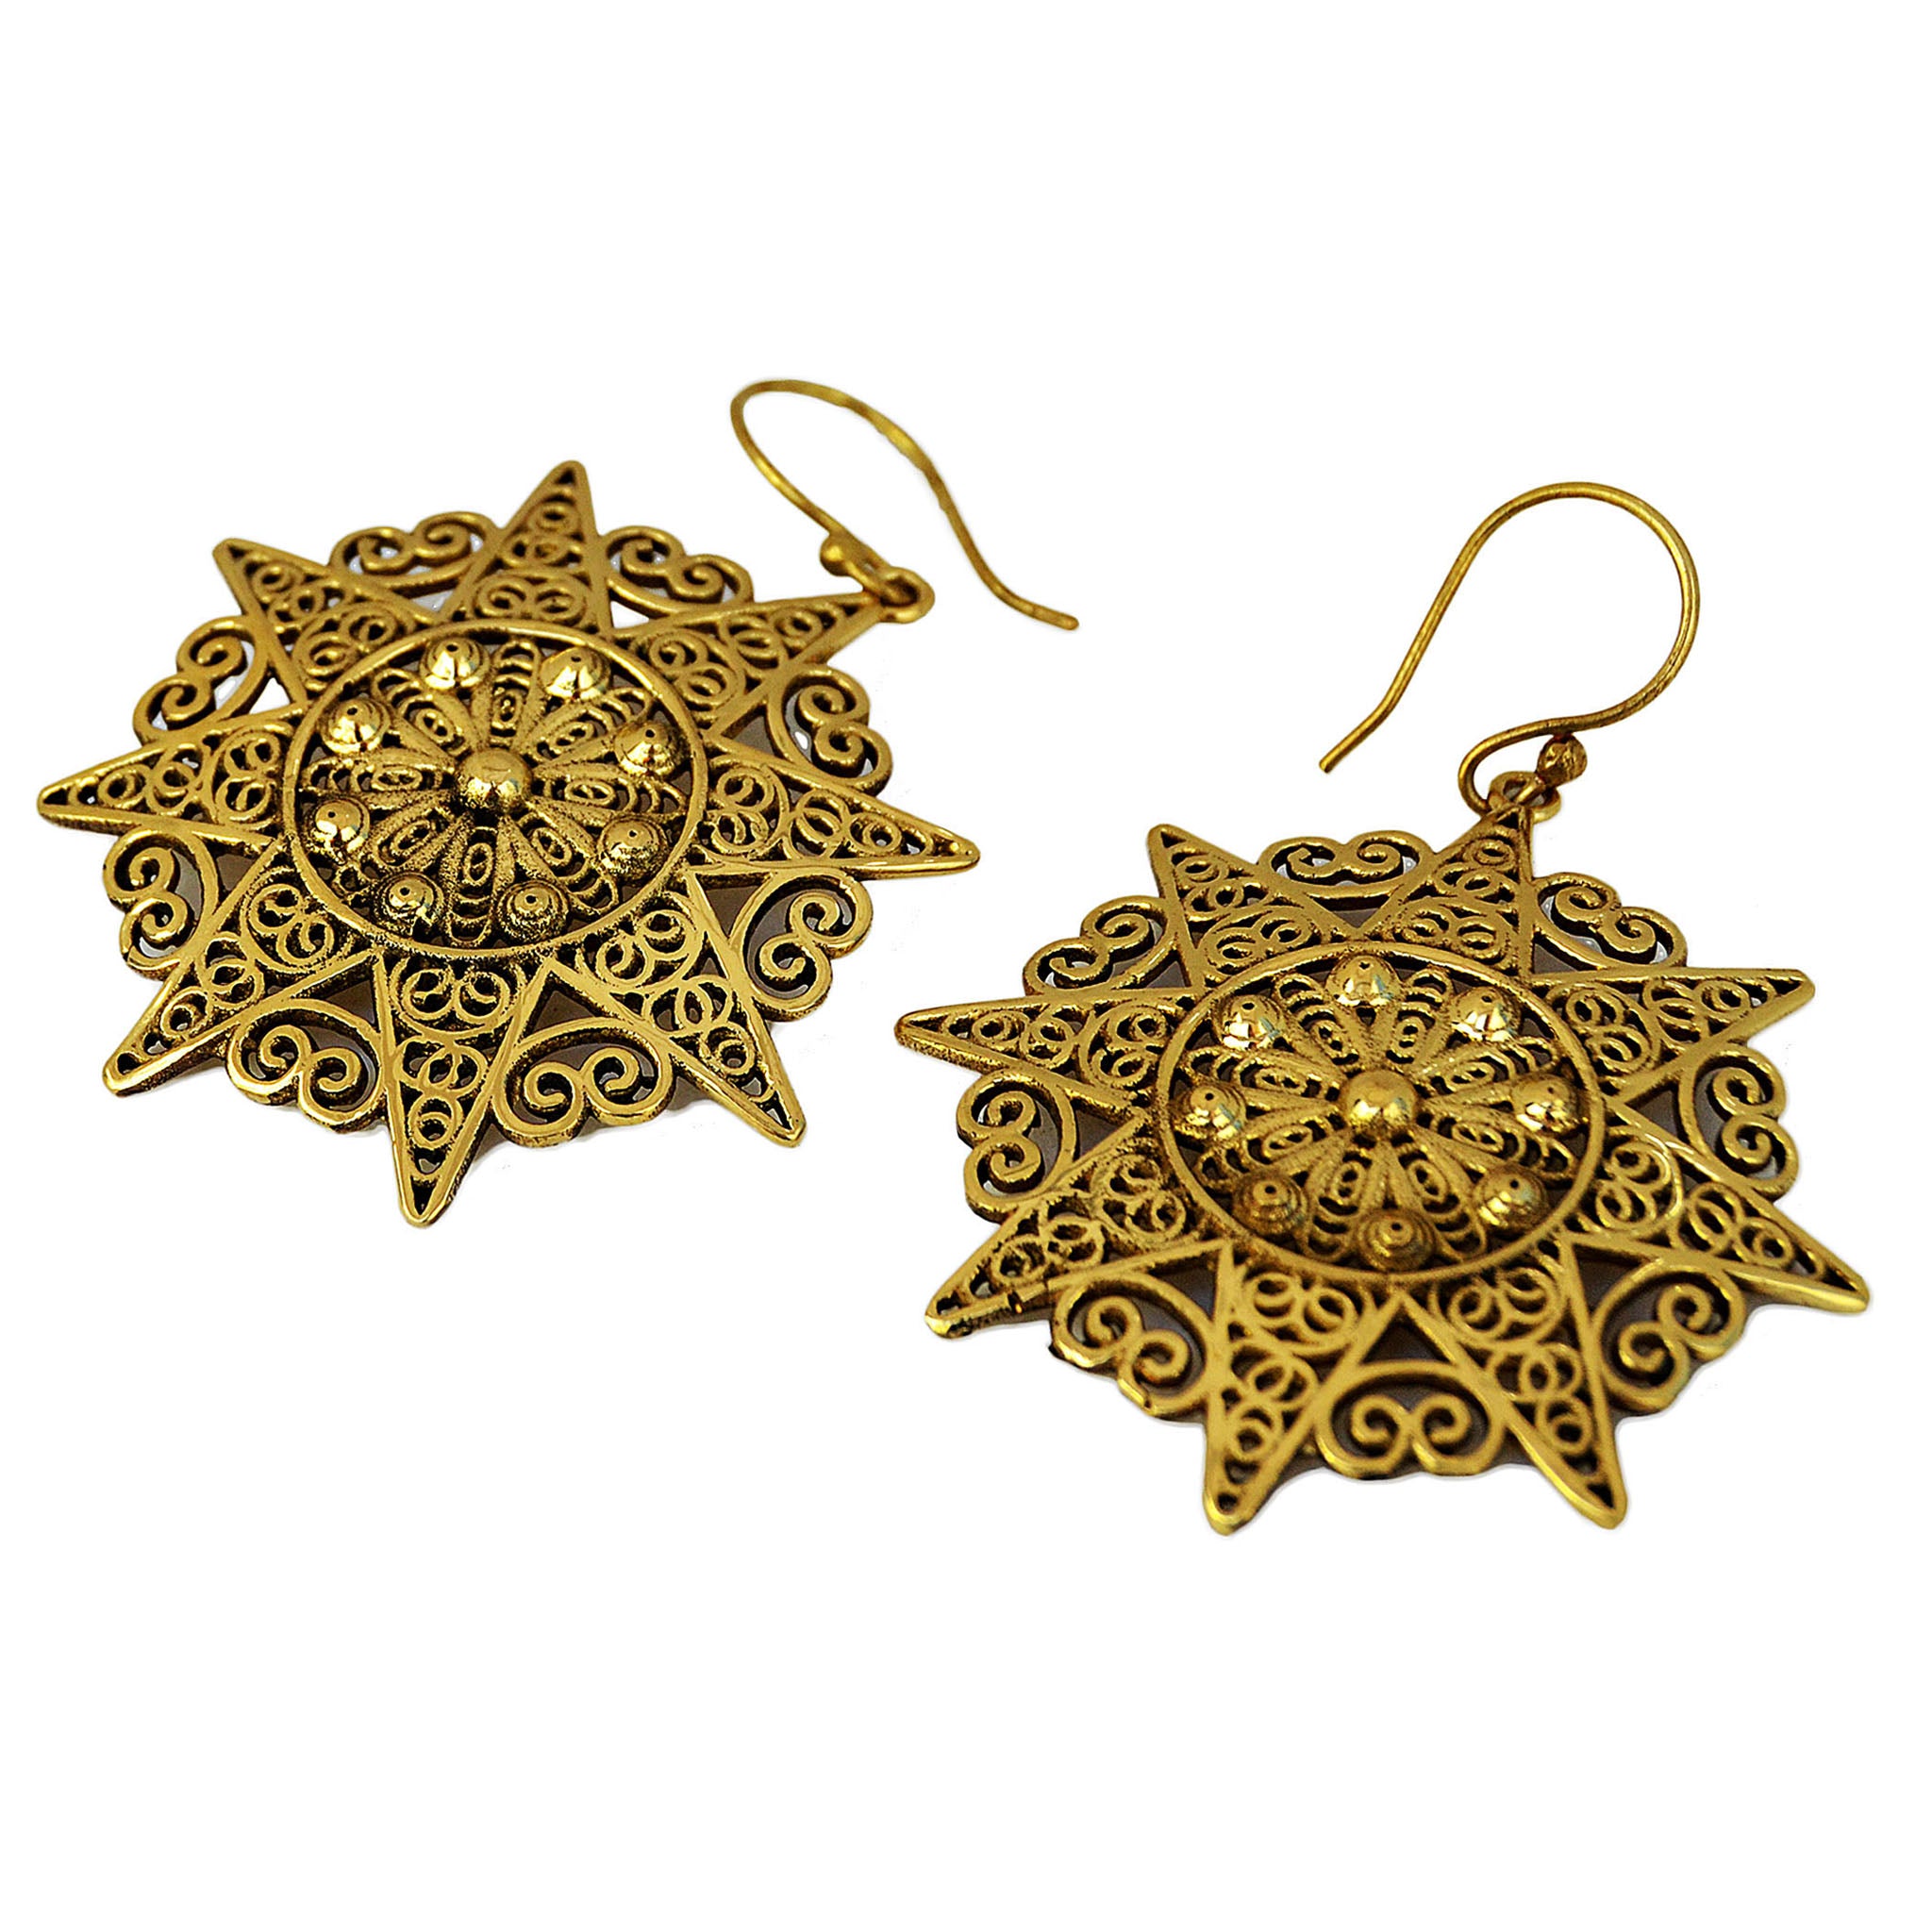 Gold filigree mandala earrings